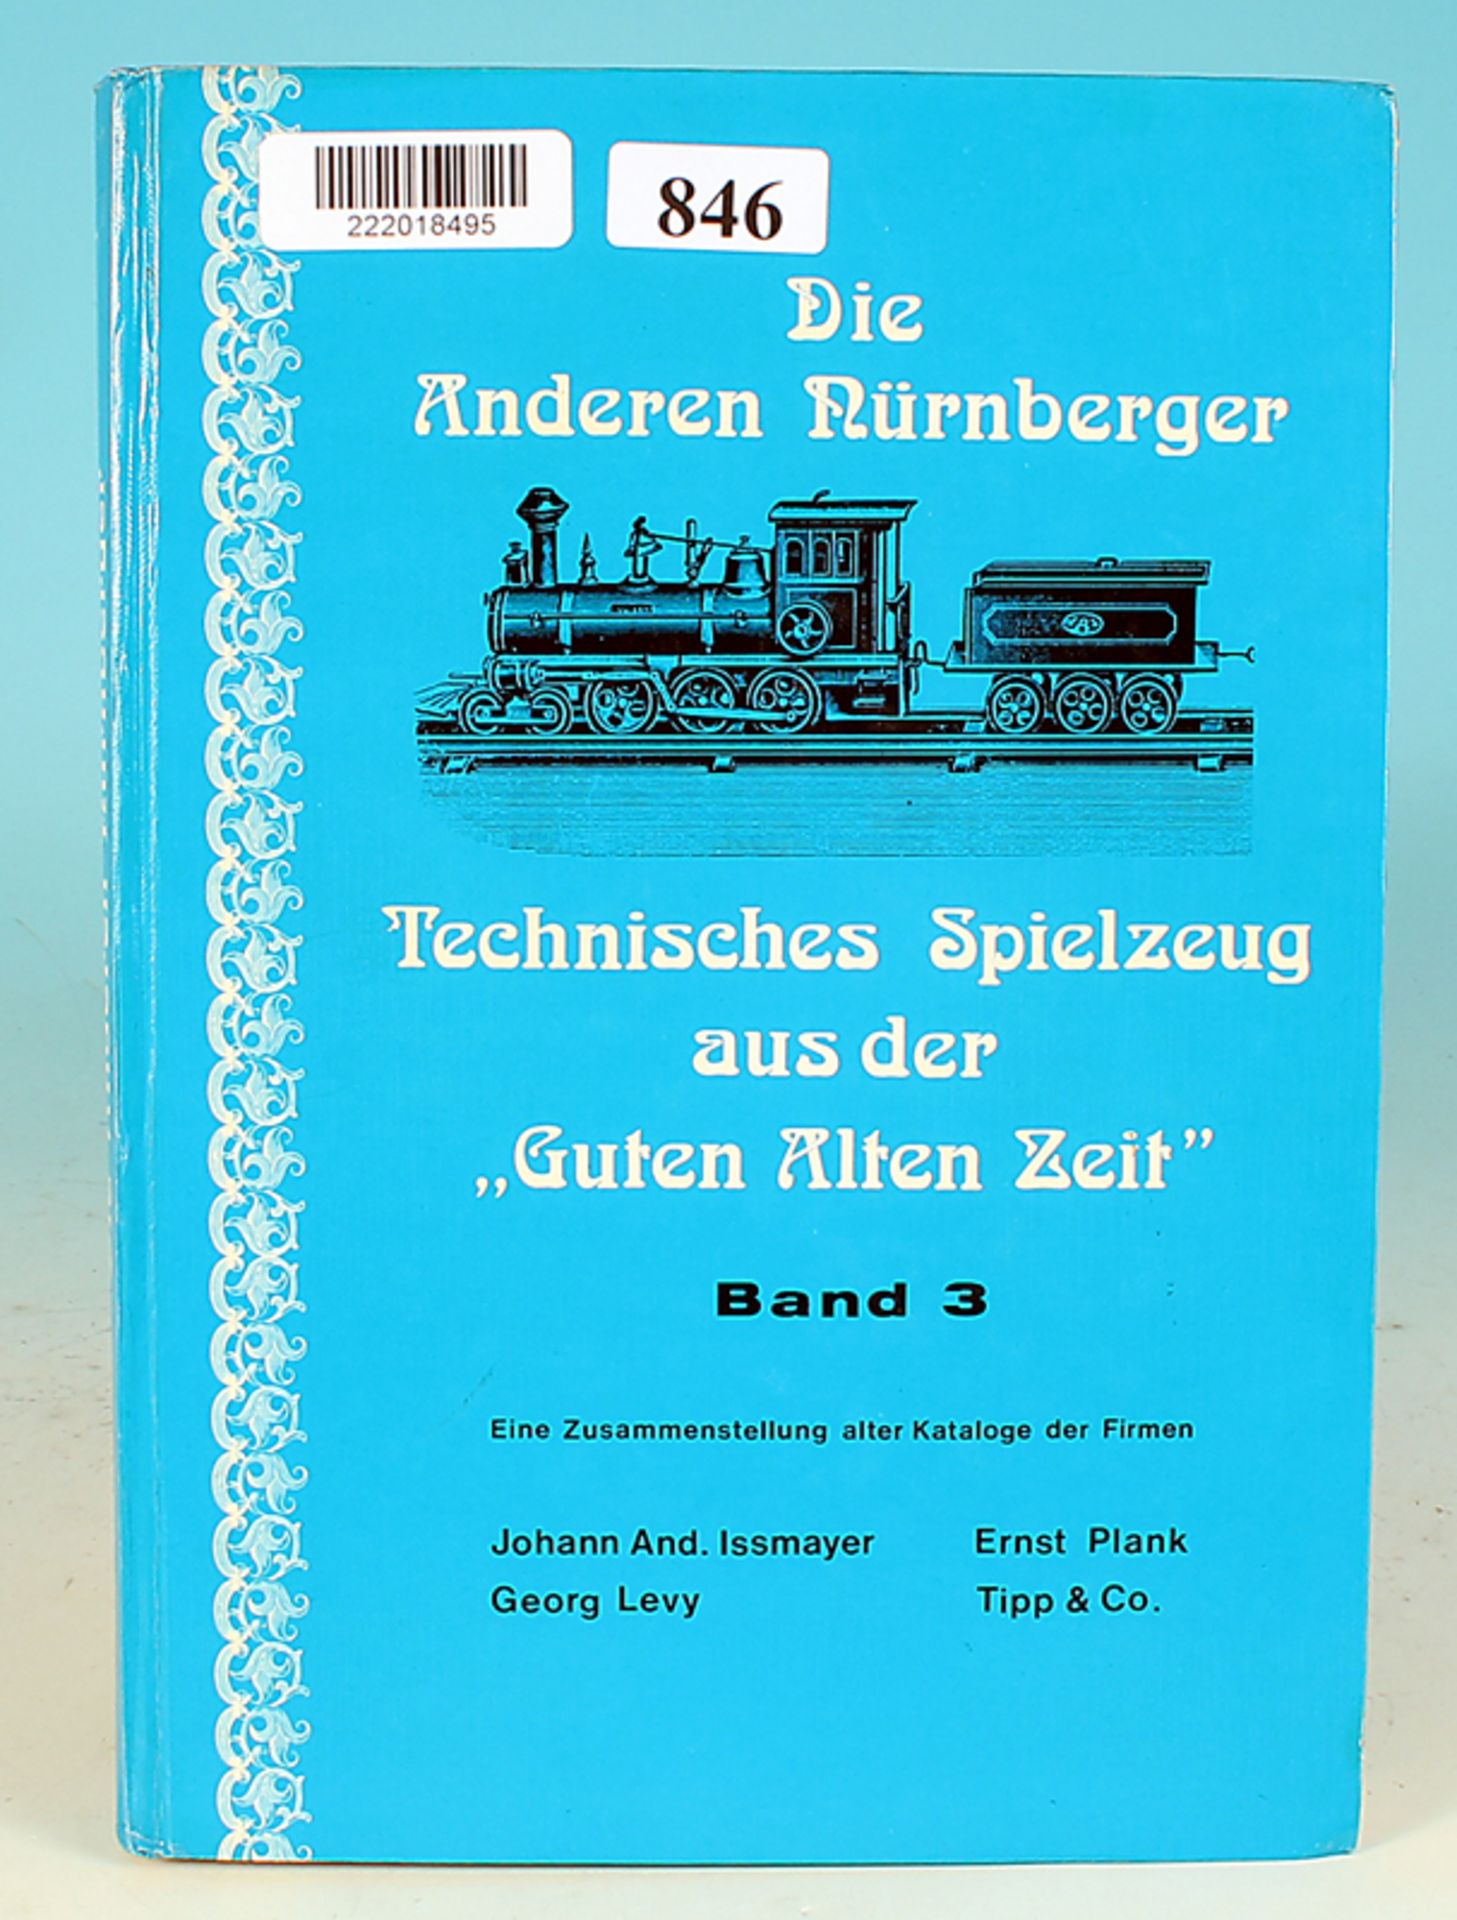 Exemplar "Die Anderen Nürnberger"